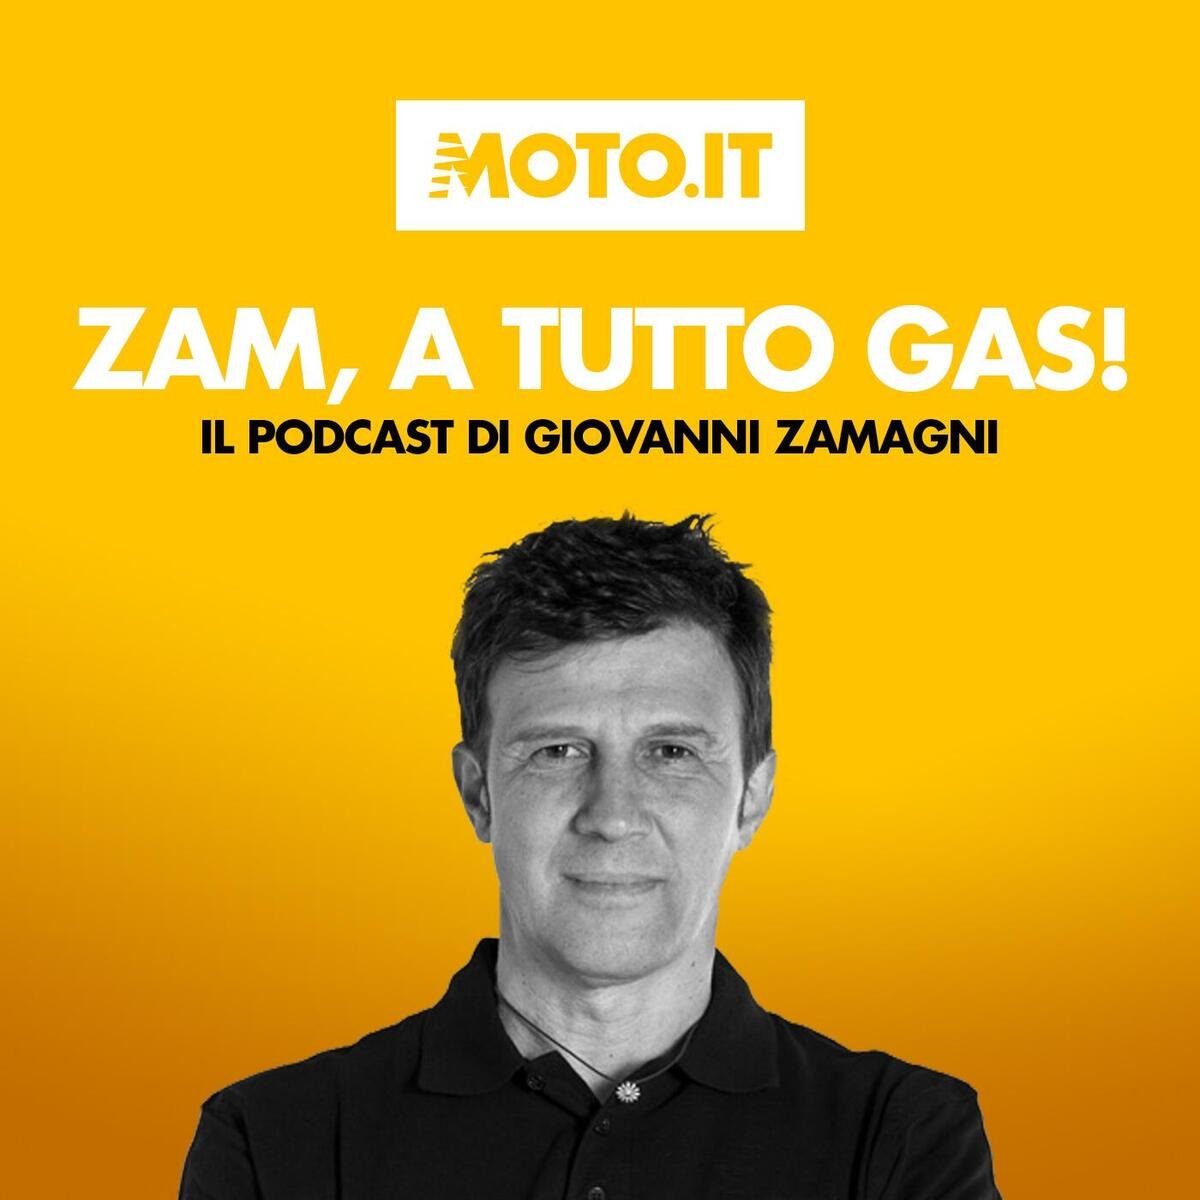 zam-a-tutto-gas-#108-motogp:-come-è-cambiata-con-sprint-e-aerodinamica-[podcast]-–-sport-–-moto.it